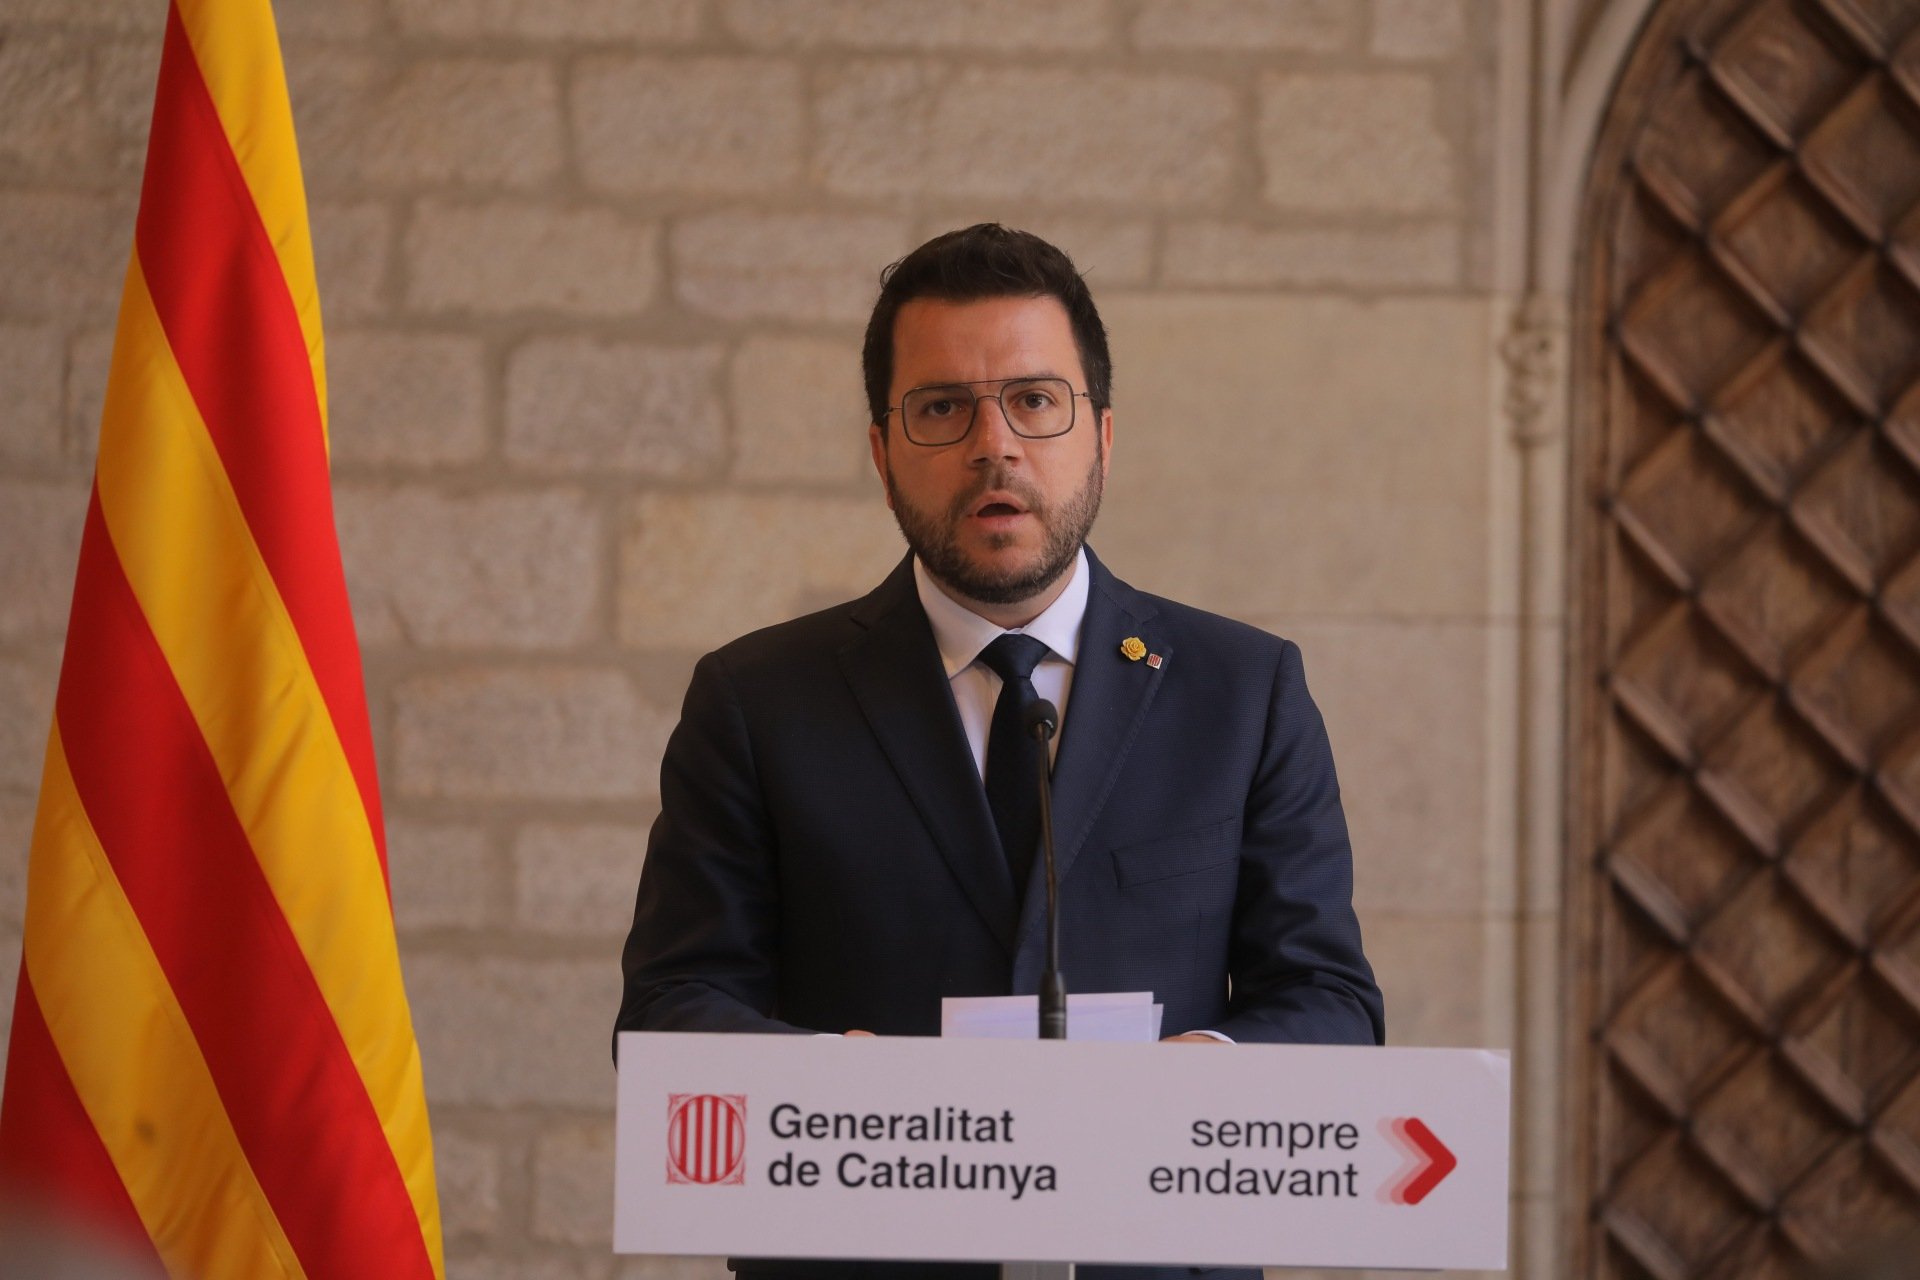 President Pere Aragonès declaració Generalitat (1) / Eva Parey